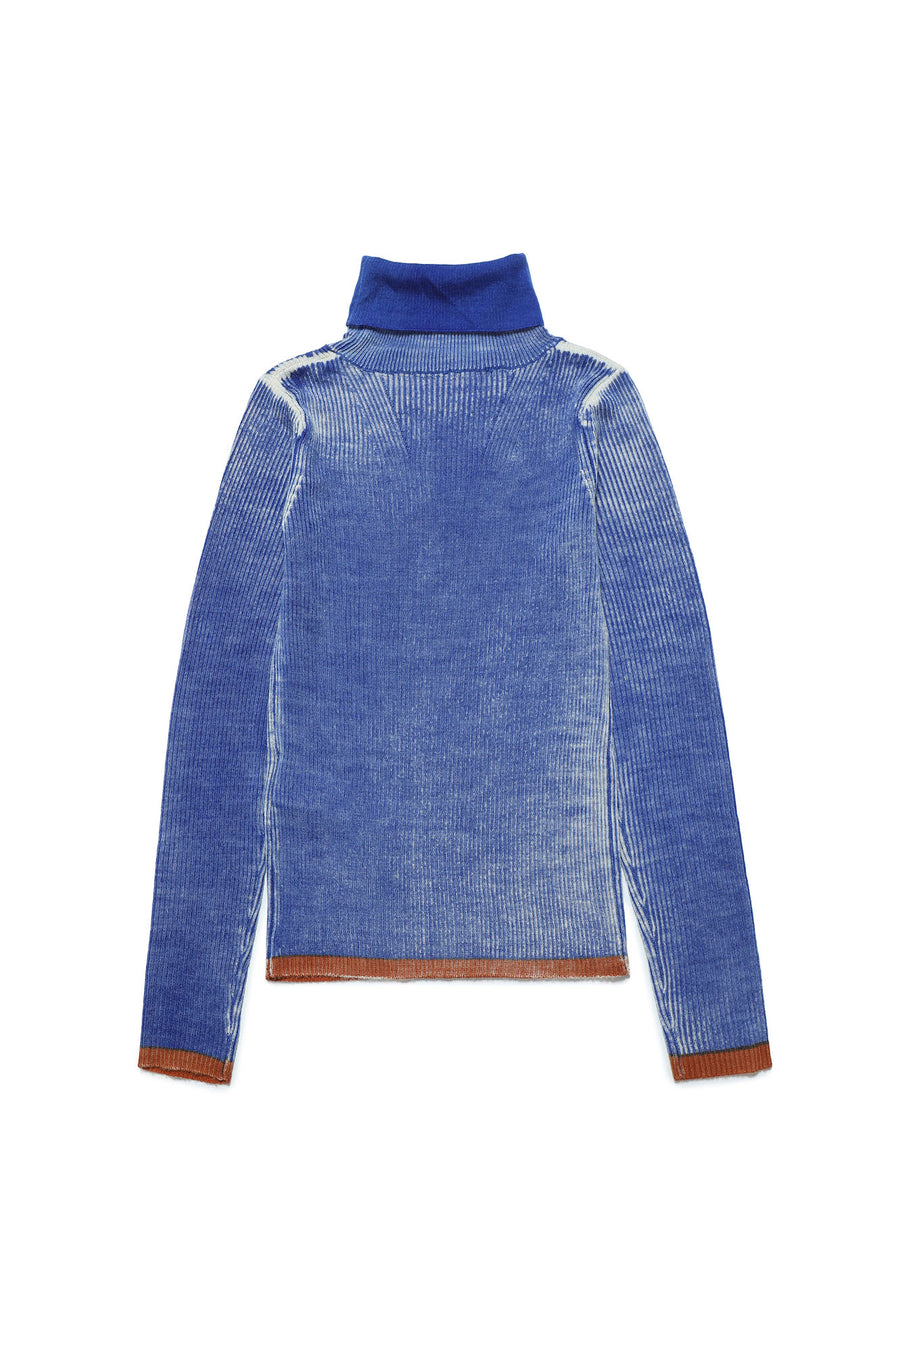 Wash blue knit sweater by Diesel